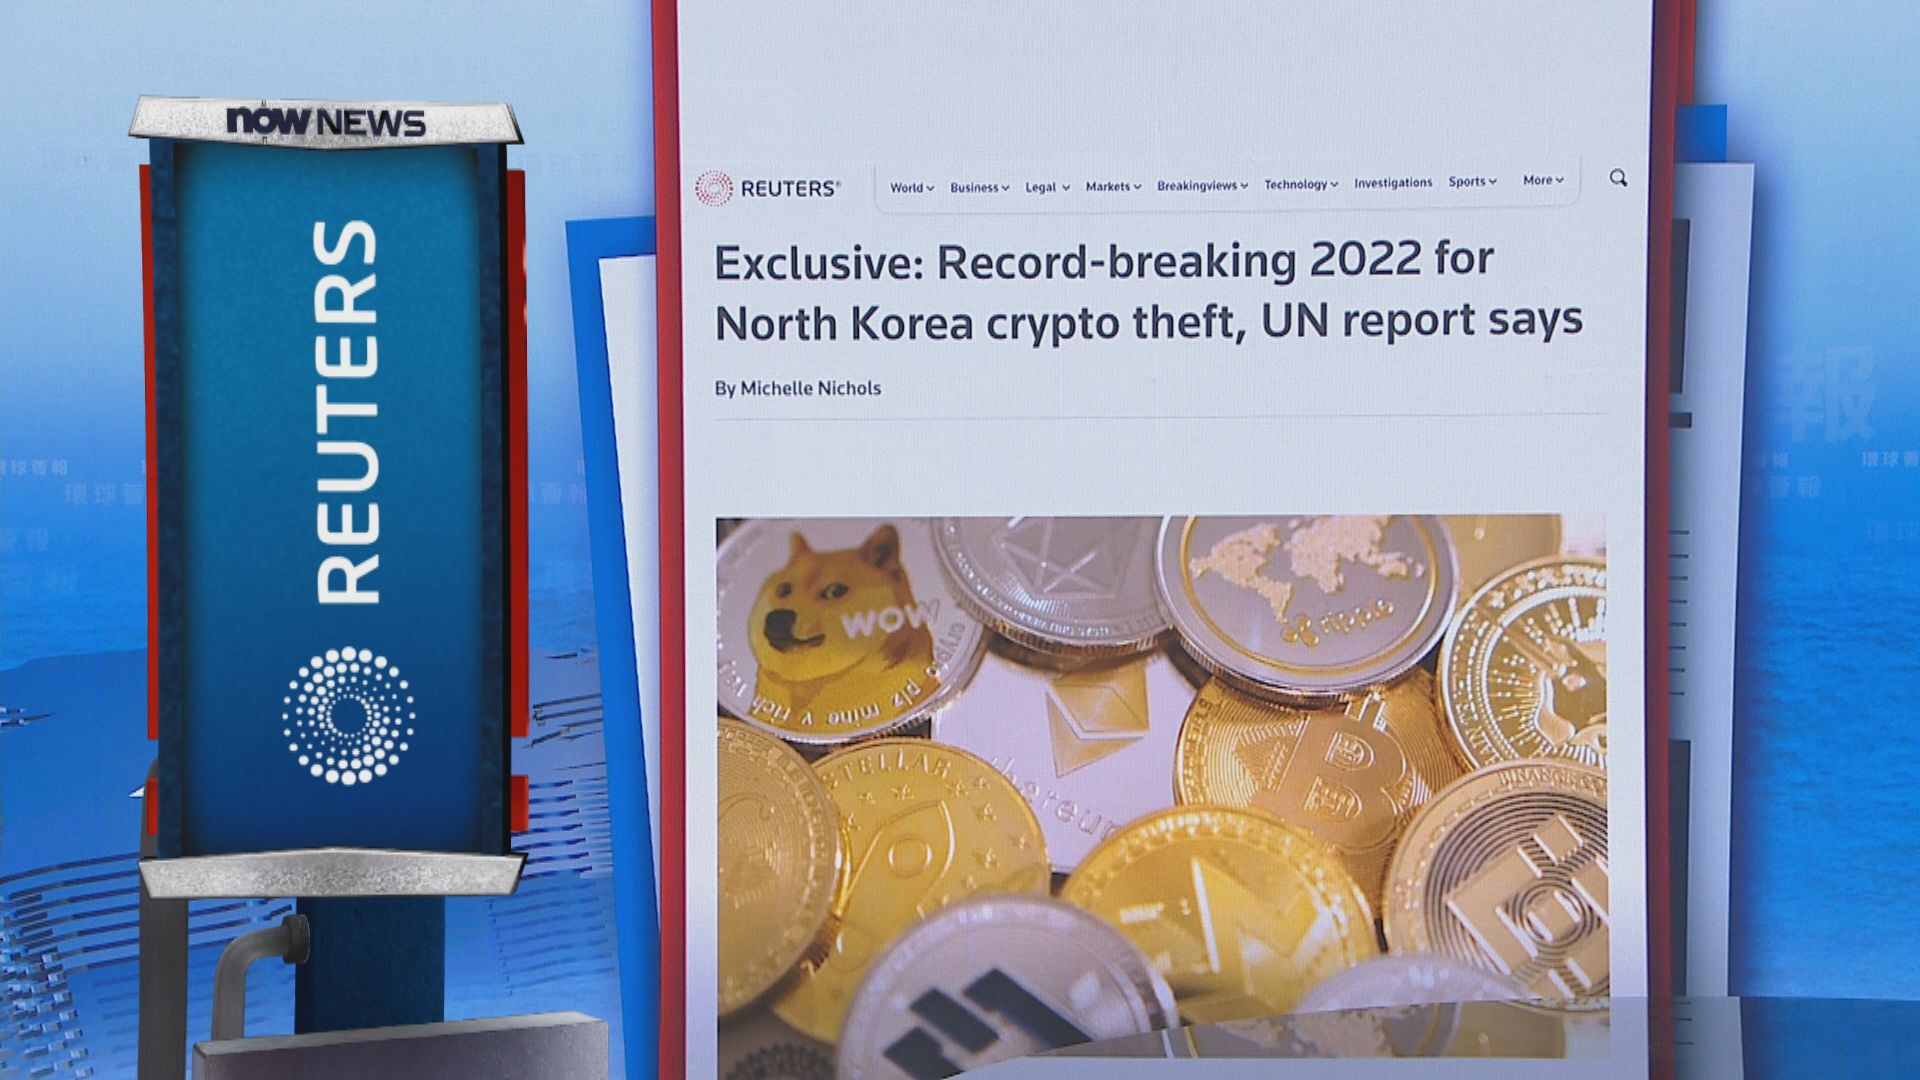 【環球薈報】聯合國報告指北韓去年竊取加密貨幣資產金額破紀錄